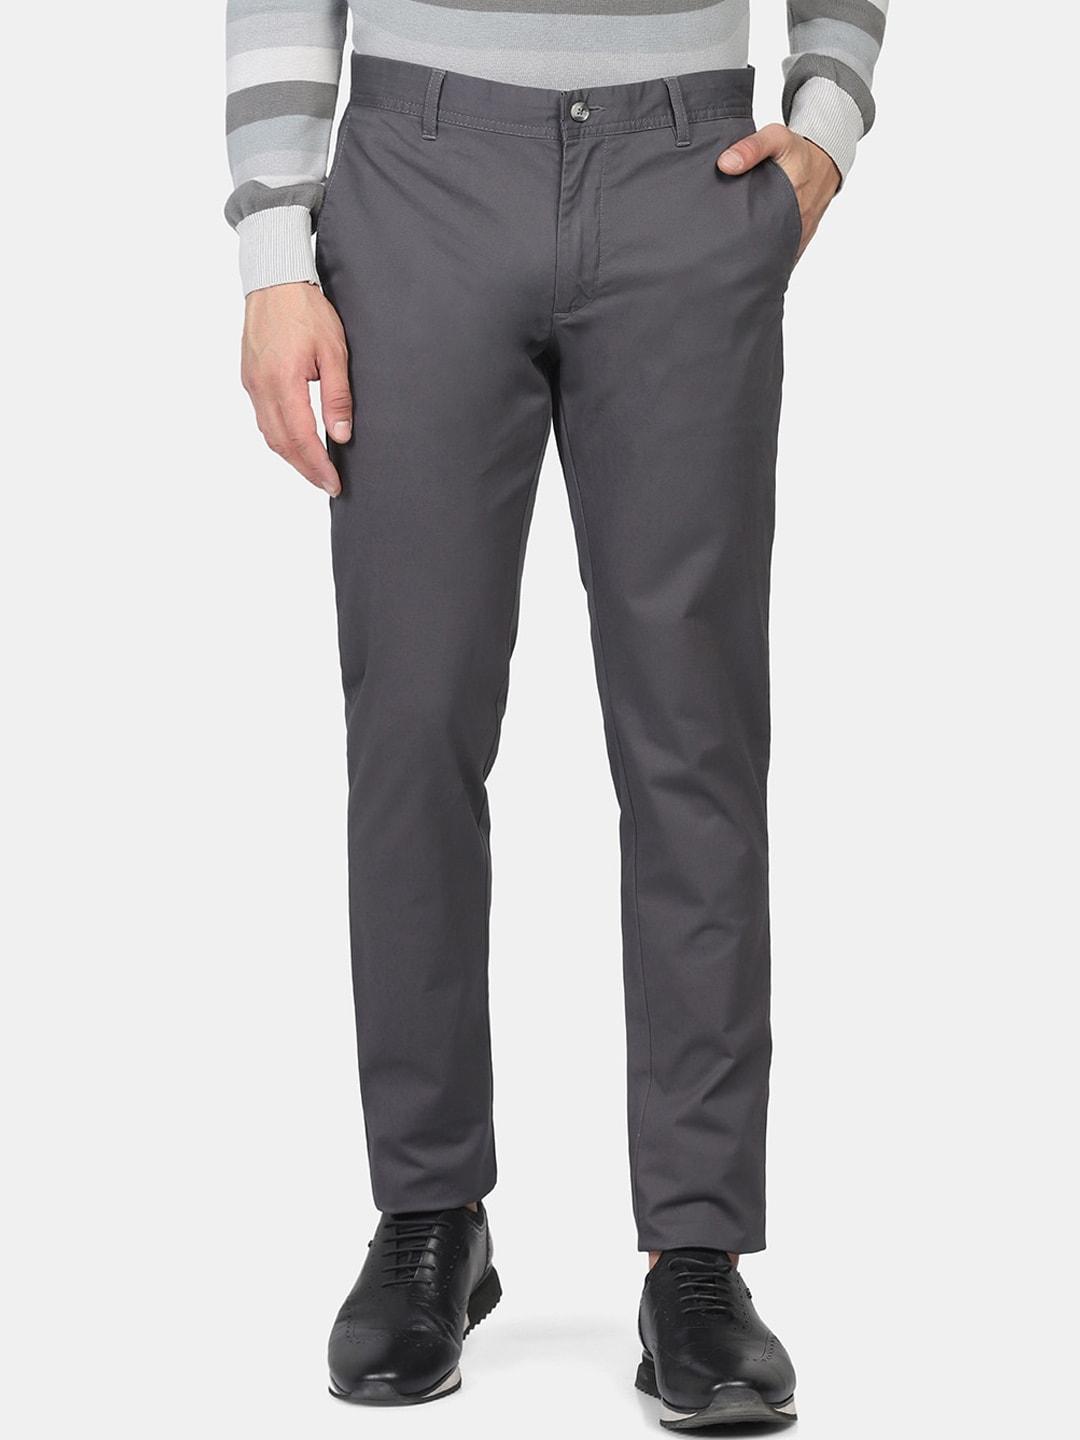 blackberrys-men-skinny-fit-cotton-trousers